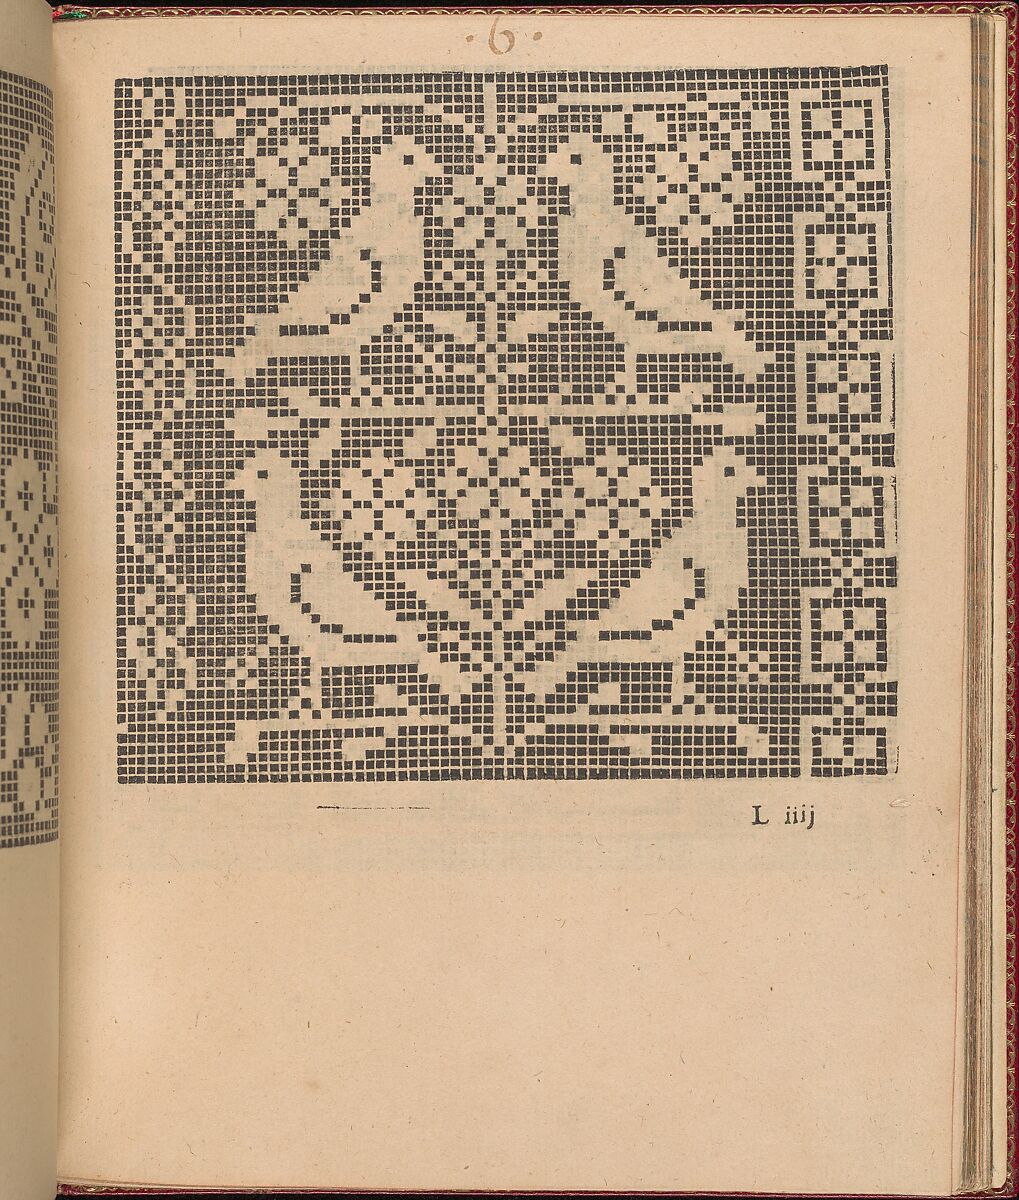 Les Singuliers et Nouveaux Portraicts... page 44 (recto), Federico de Vinciolo (Italian, active Paris, ca. 1587–99), Woodcut 